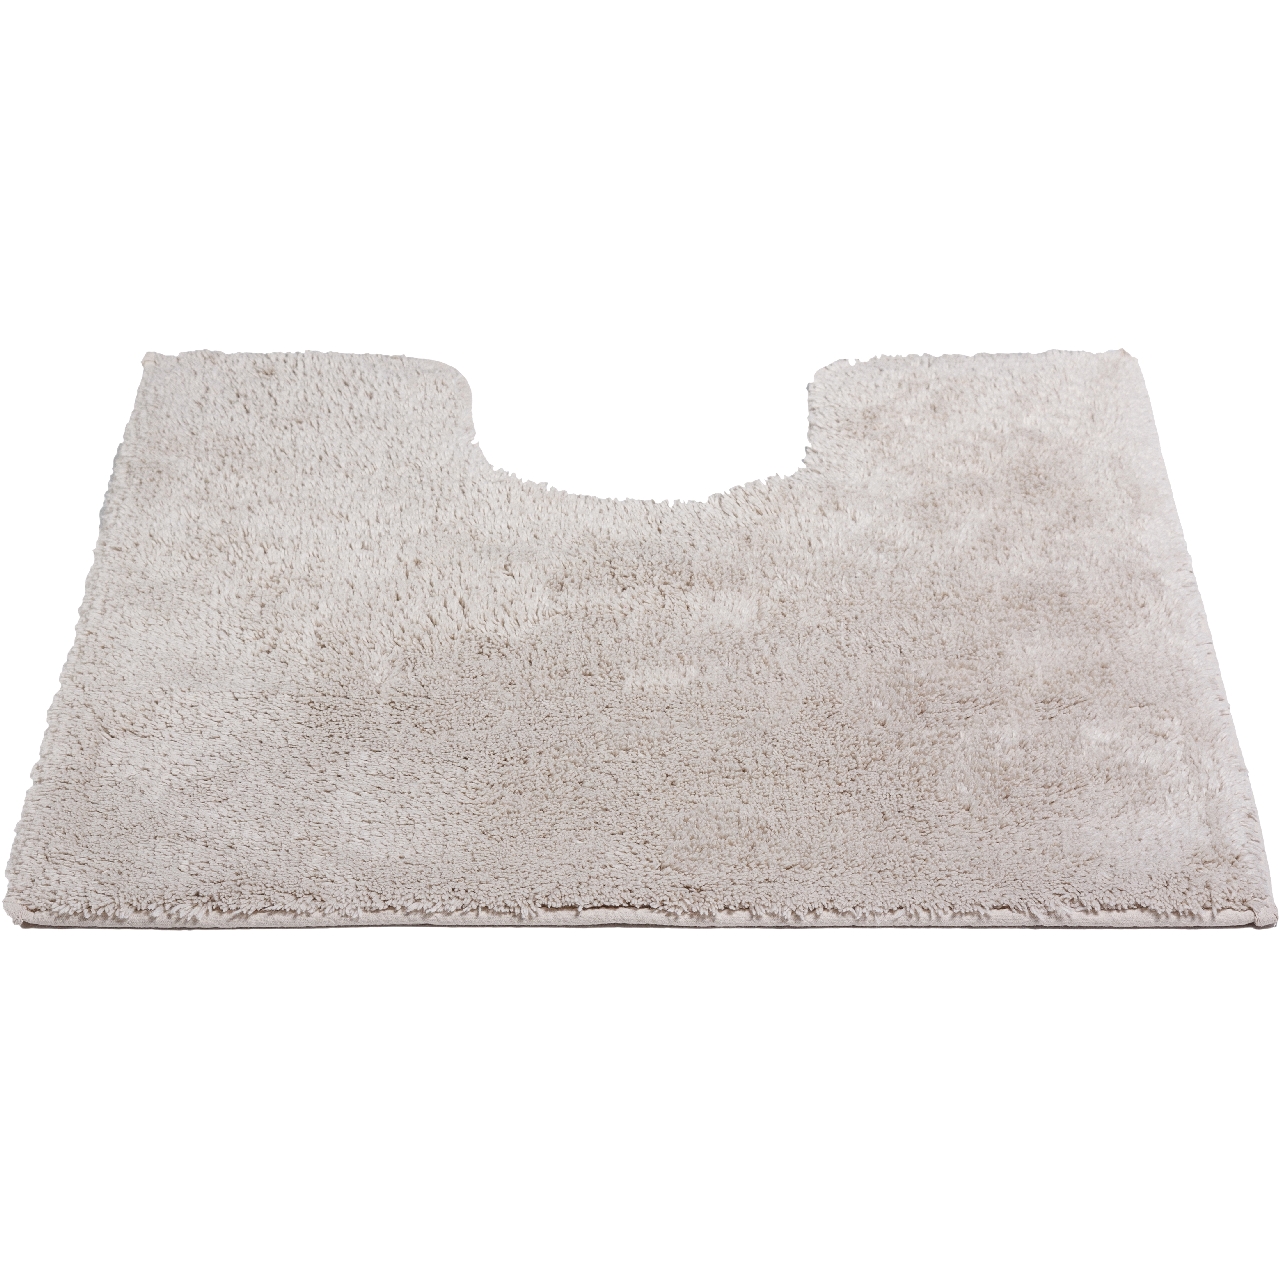 Коврик для ванной комнаты Monterey Sand песочный, 55 x 55 см (Spirella 1019189)